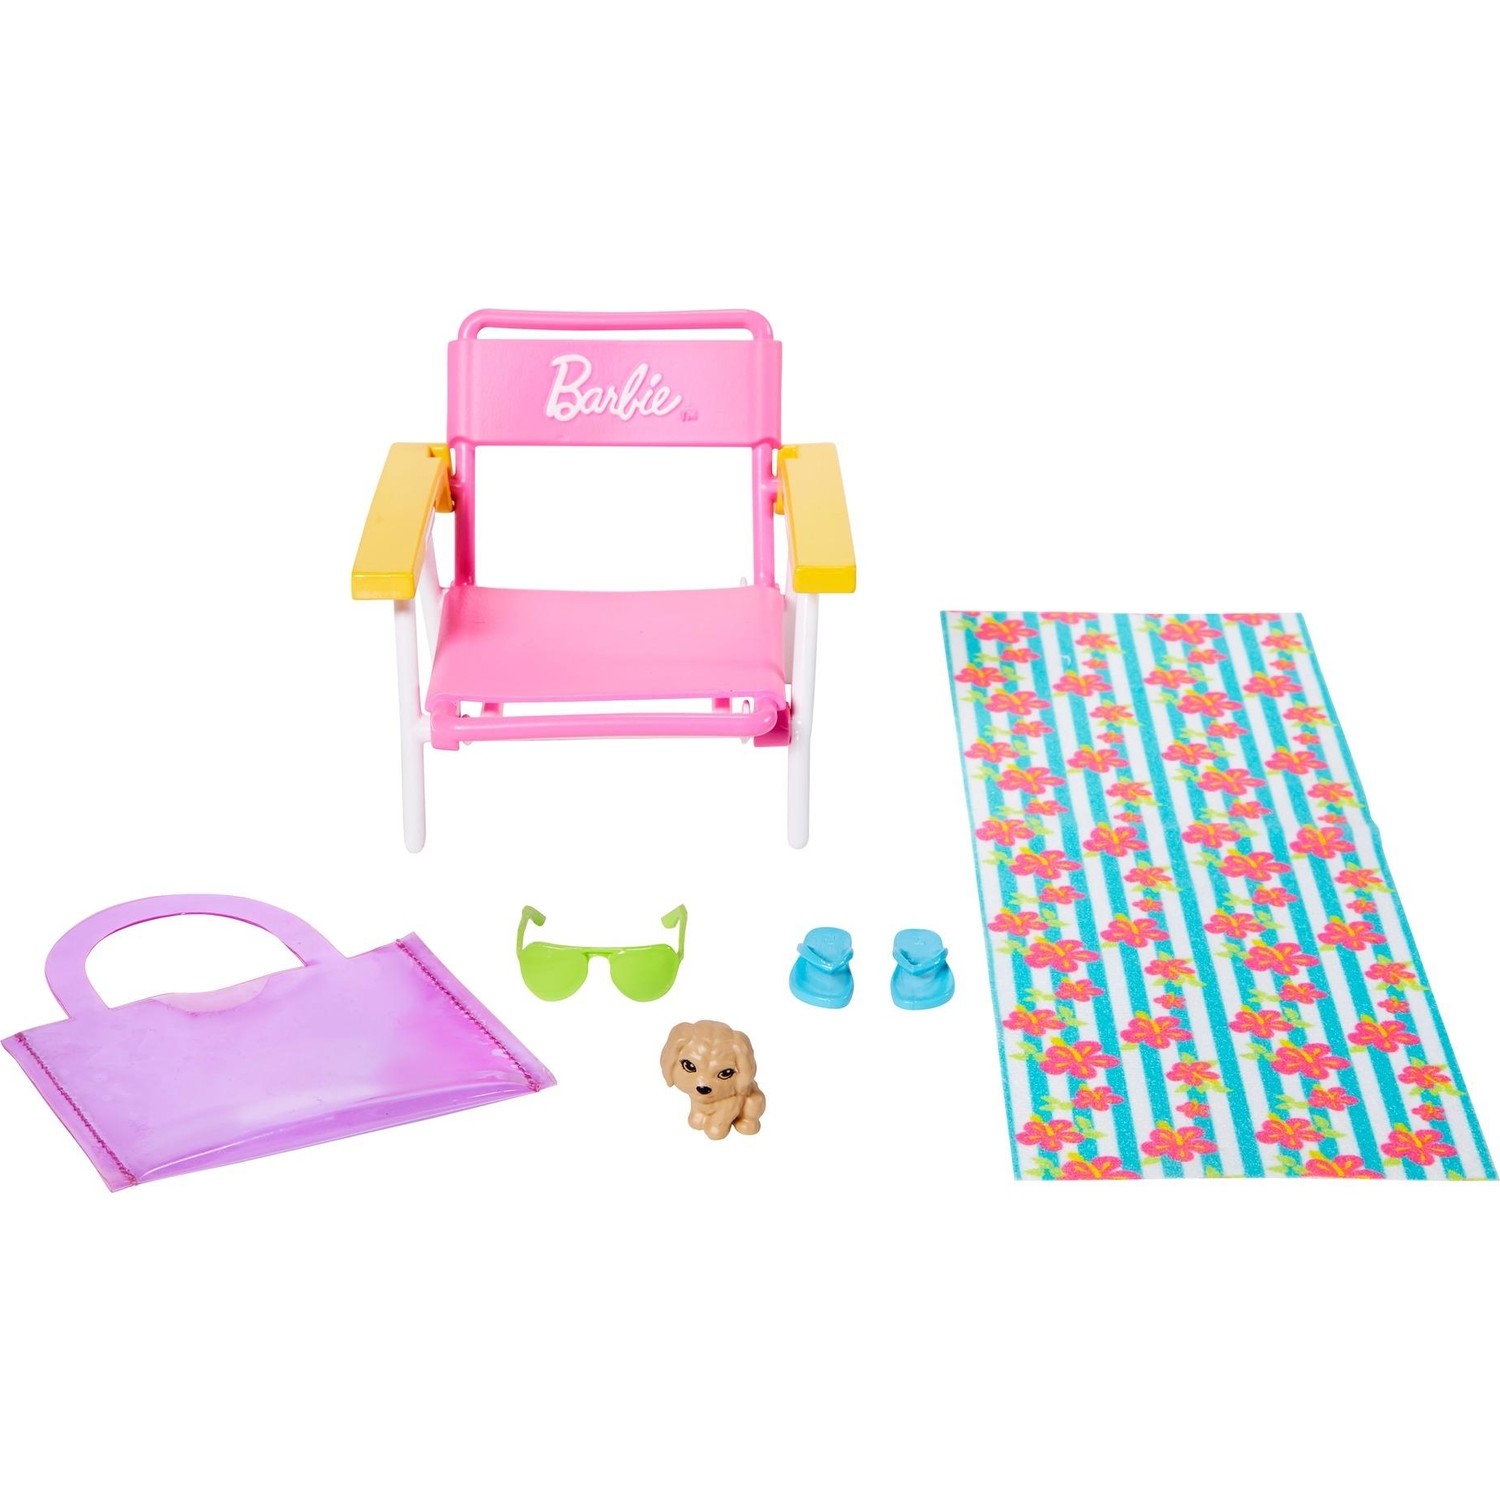 цена Игровой набор Barbie Home Accessory Packs GRG56